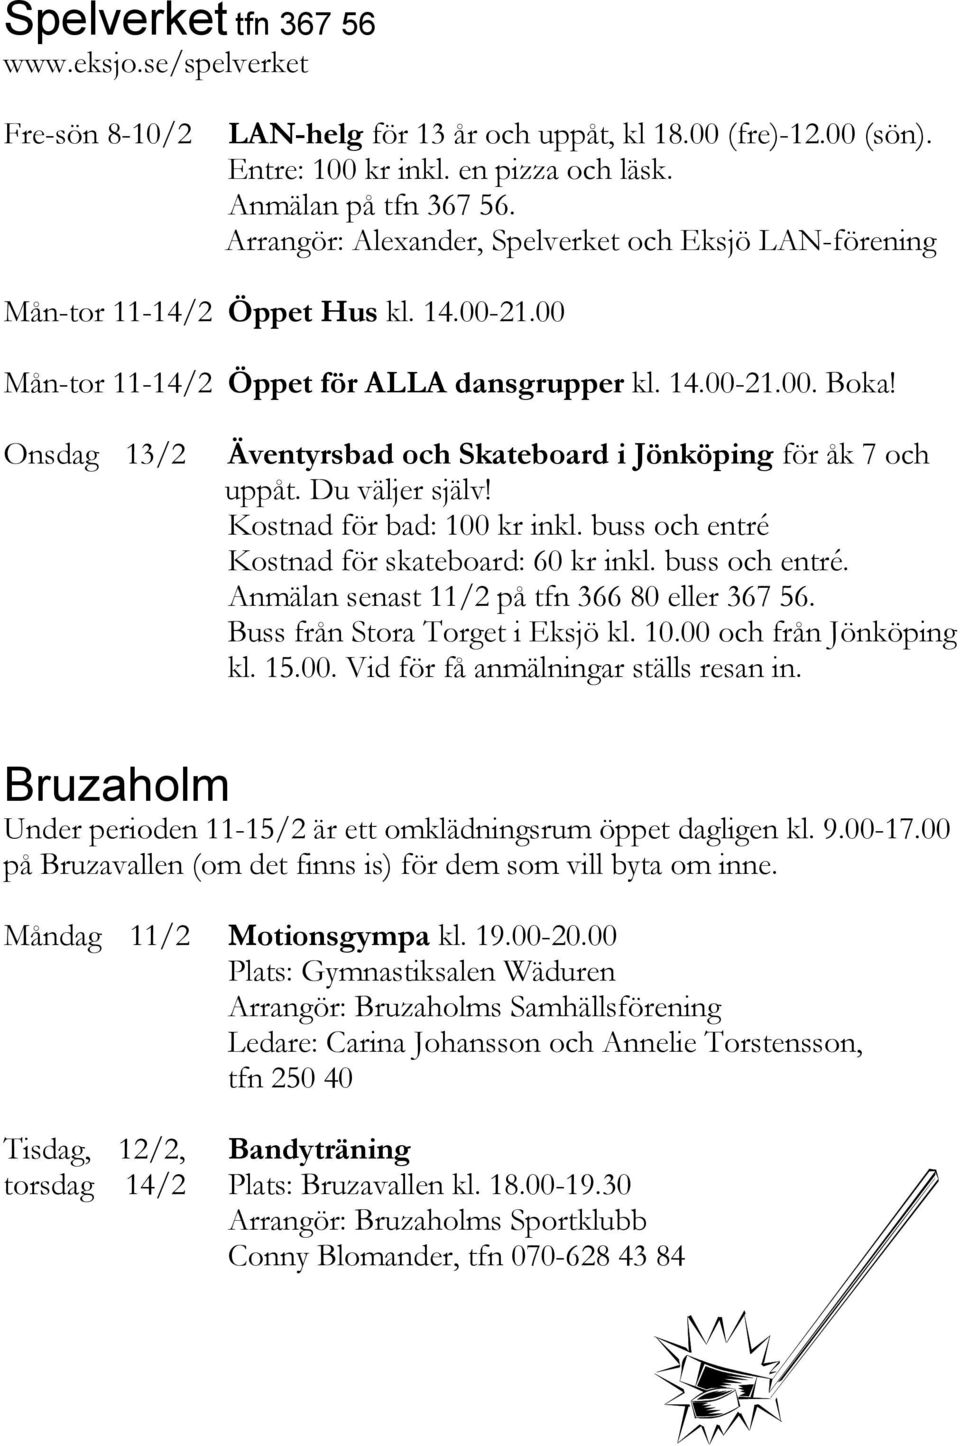 Onsdag 13/2 Äventyrsbad och Skateboard i Jönköping för åk 7 och uppåt. Du väljer själv! Kostnad för bad: 100 kr inkl. buss och entré Kostnad för skateboard: 60 kr inkl. buss och entré. Anmälan senast 11/2 på tfn 366 80 eller 367 56.